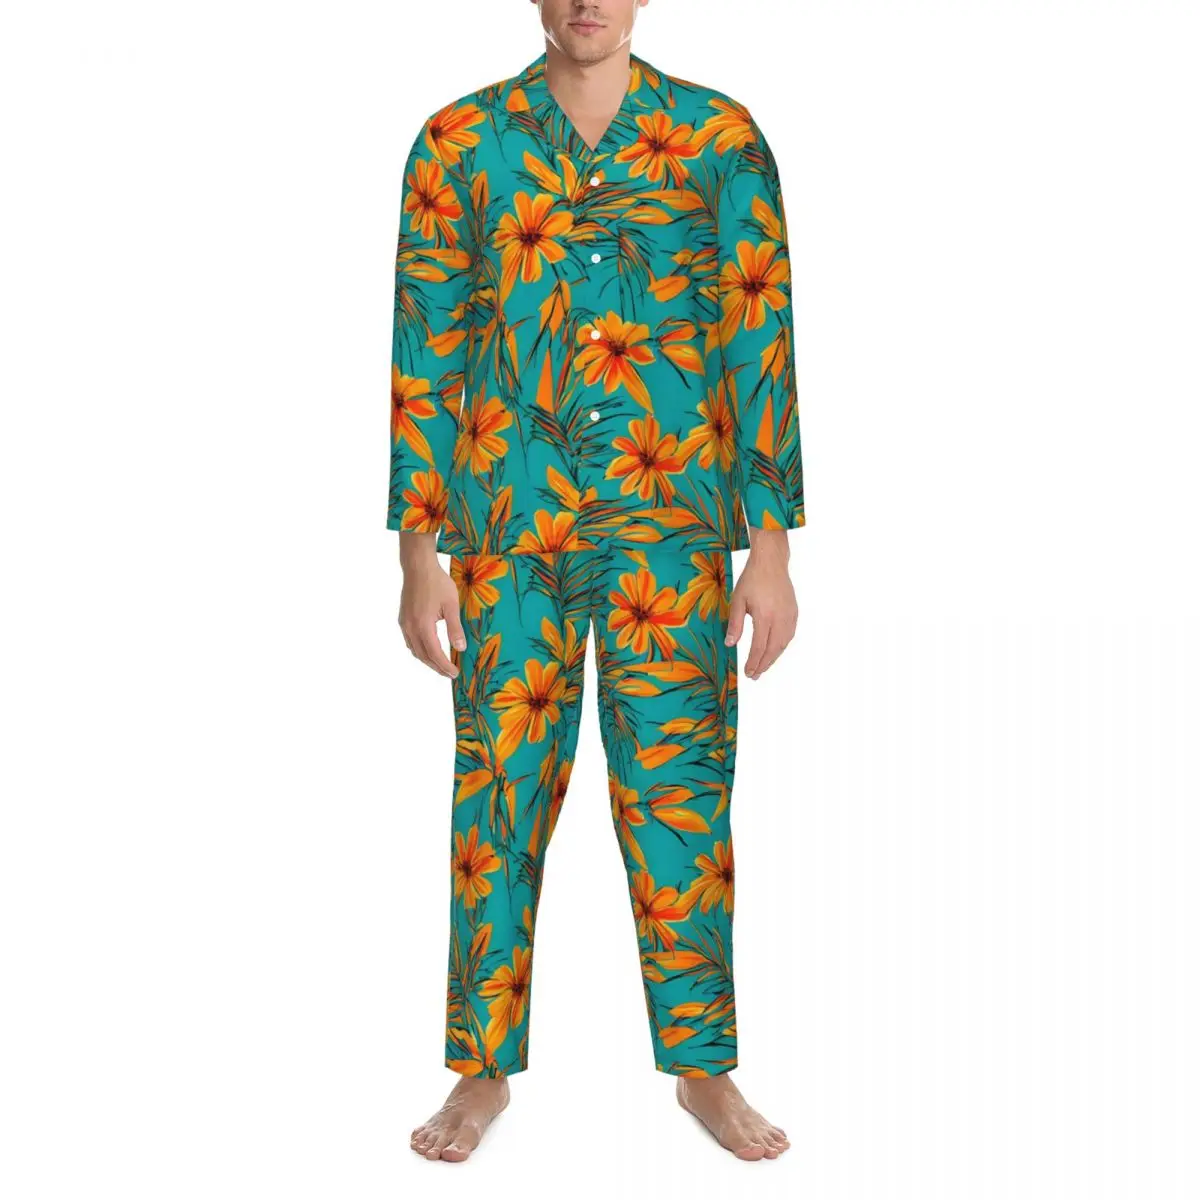 

Мужская пижама с тропическим принтом, домашняя одежда для сна, винтажный пижамный комплект из двух предметов с тропическим принтом, милый домашний костюм большого размера с длинными рукавами